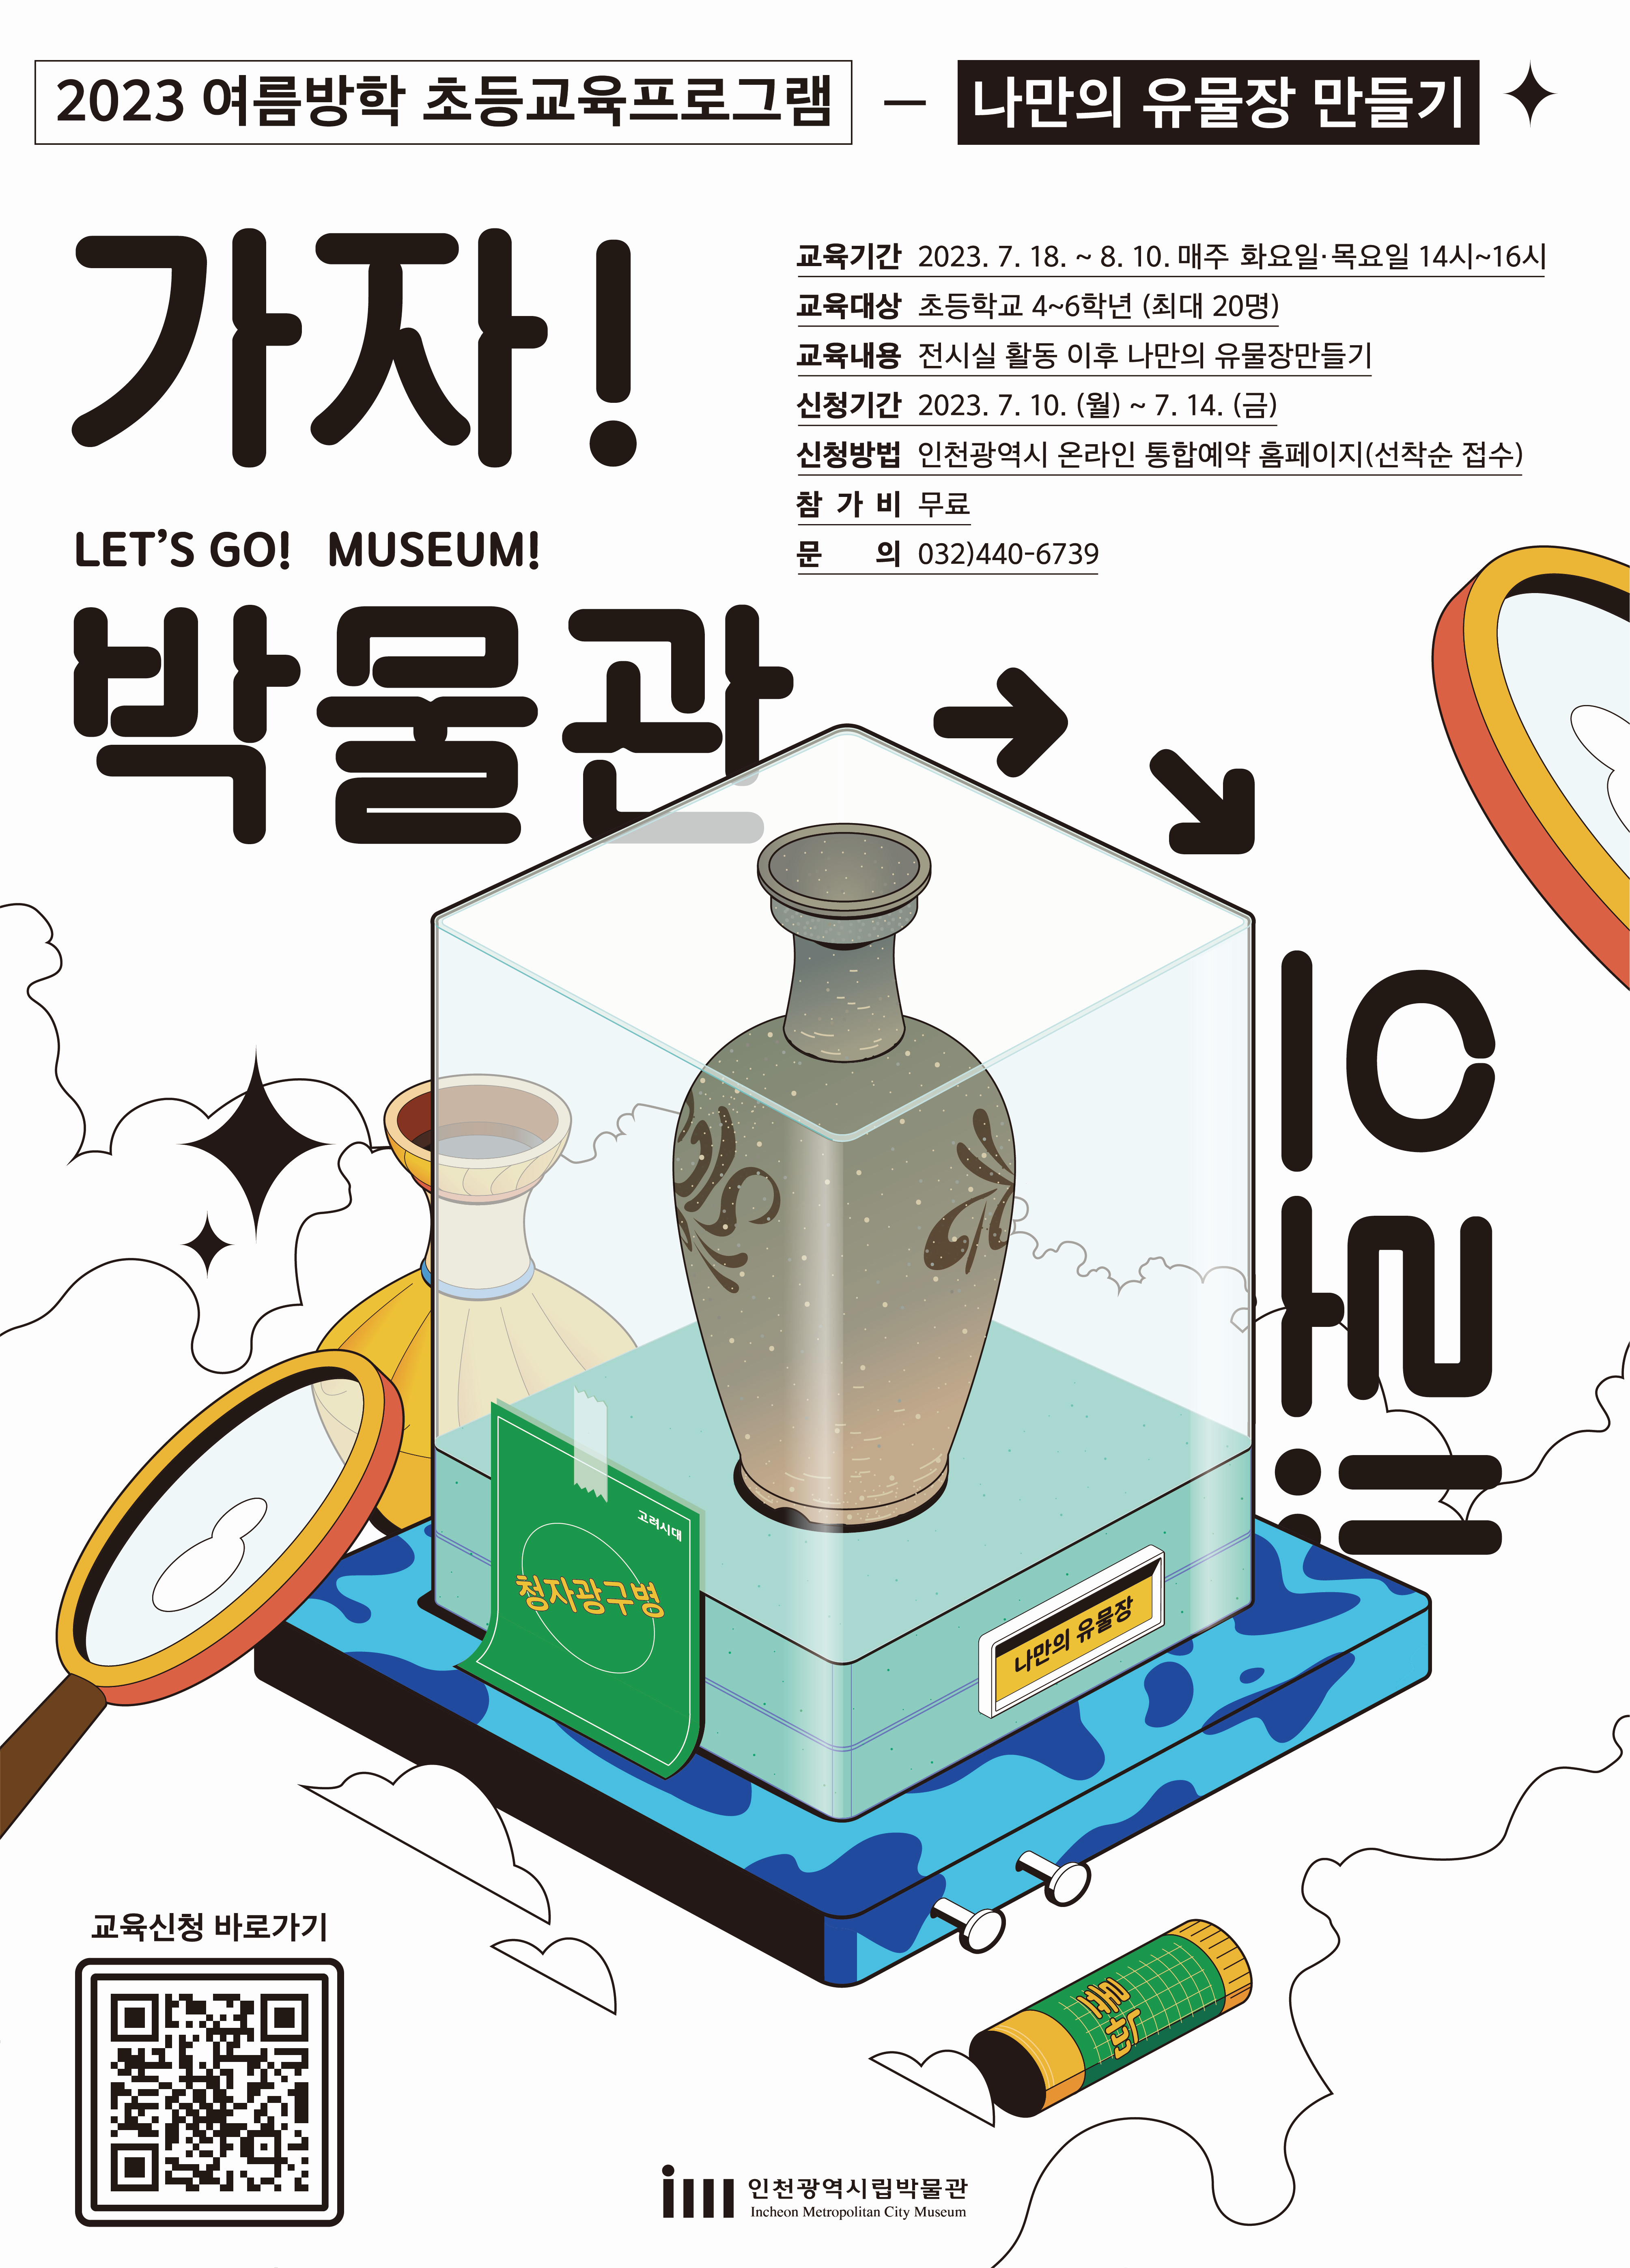 나만의 유물장 만들기 홍보 포스터